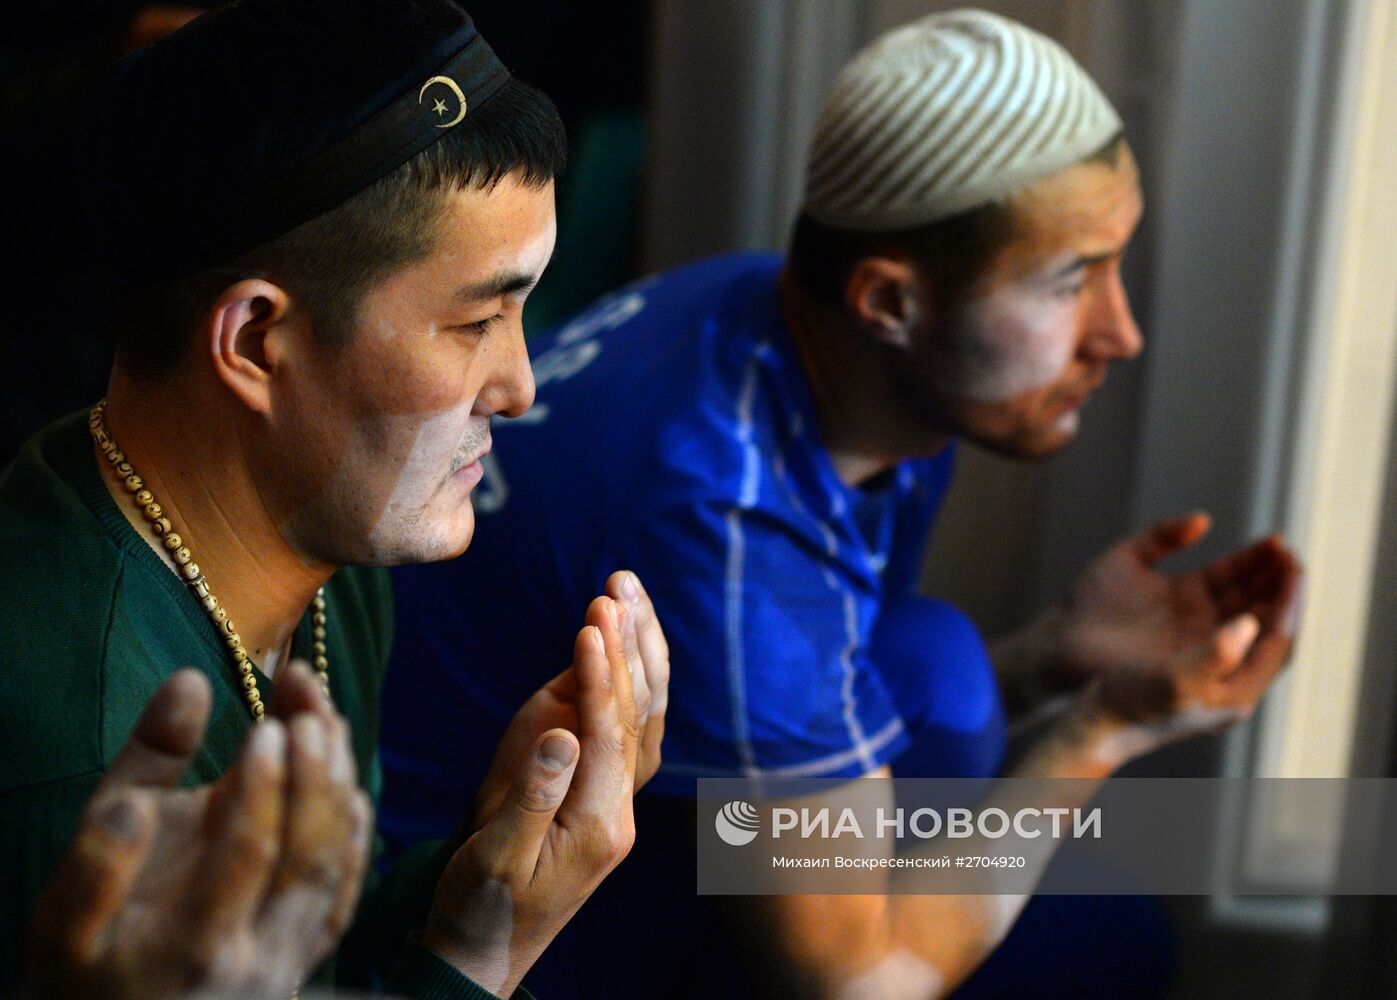 Праздник Курбан-Байрам в Московской Соборной мечети